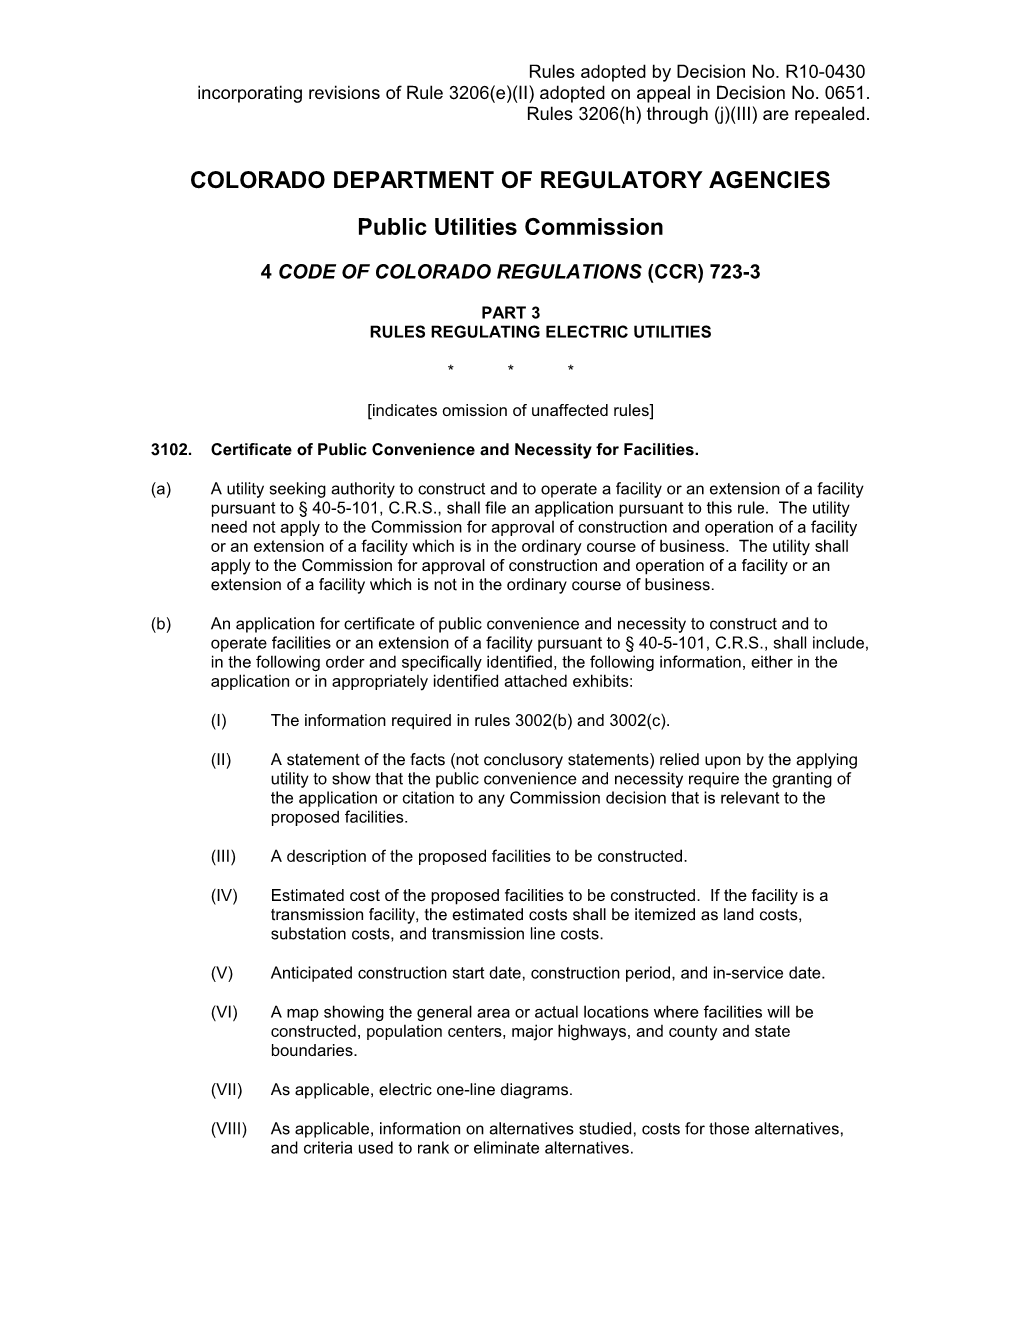 Colorado Department of Regulatory Agencies s3